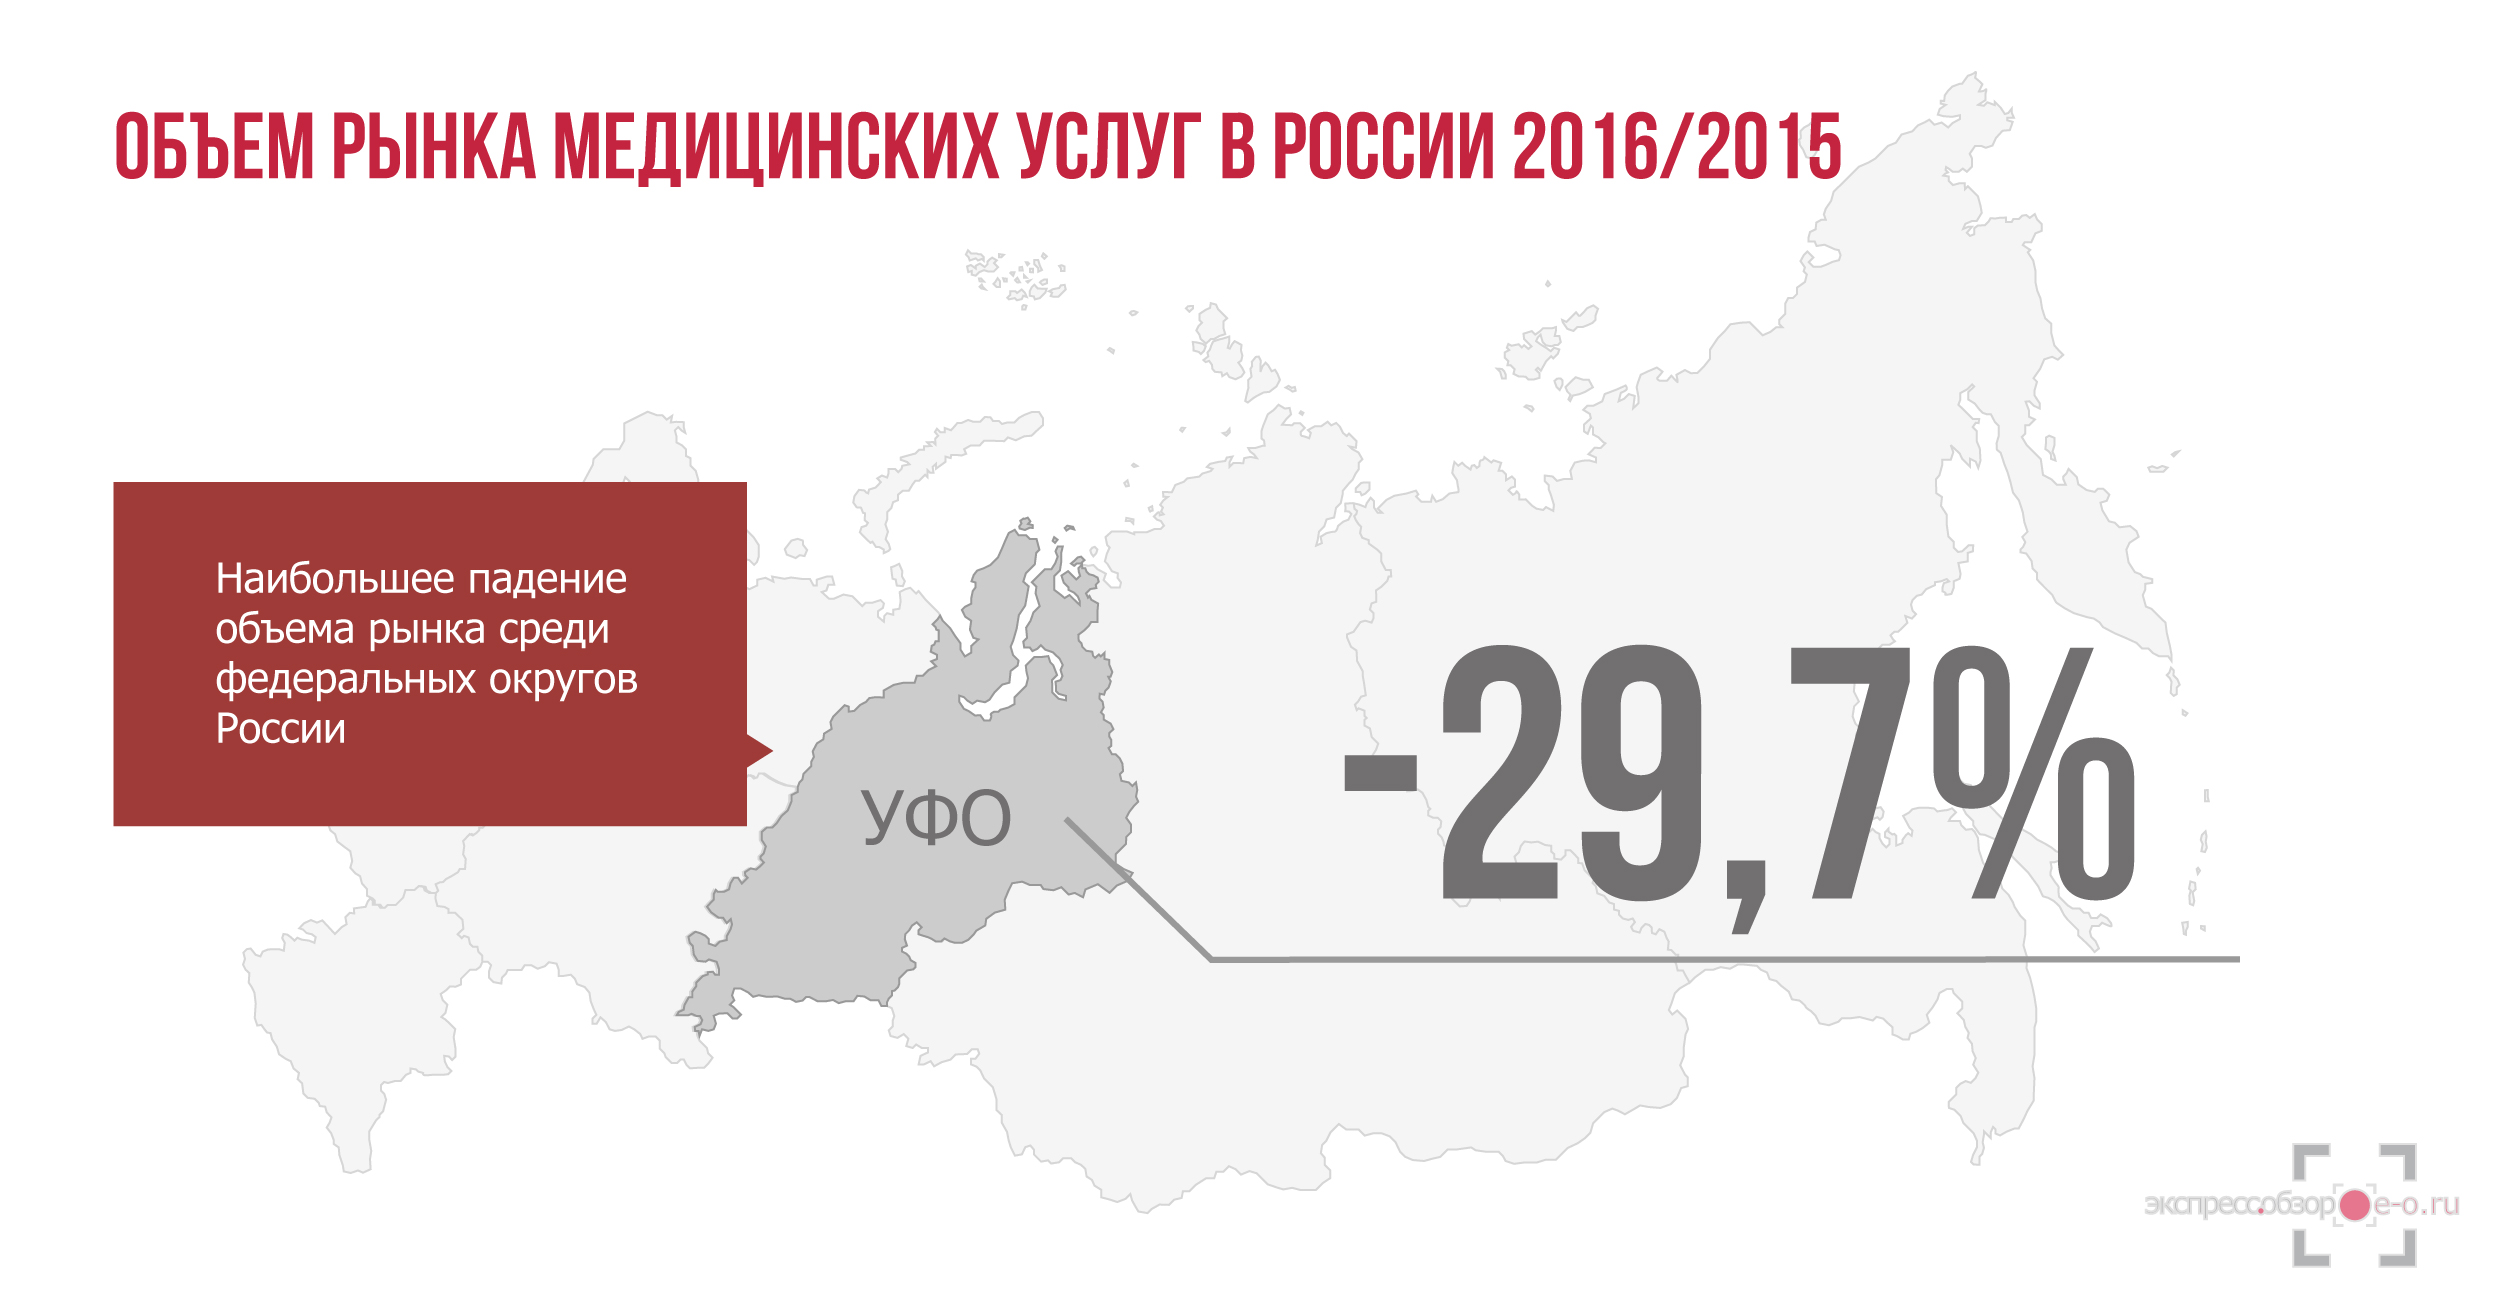 Рынок медицинских услуг в России в 2016 году